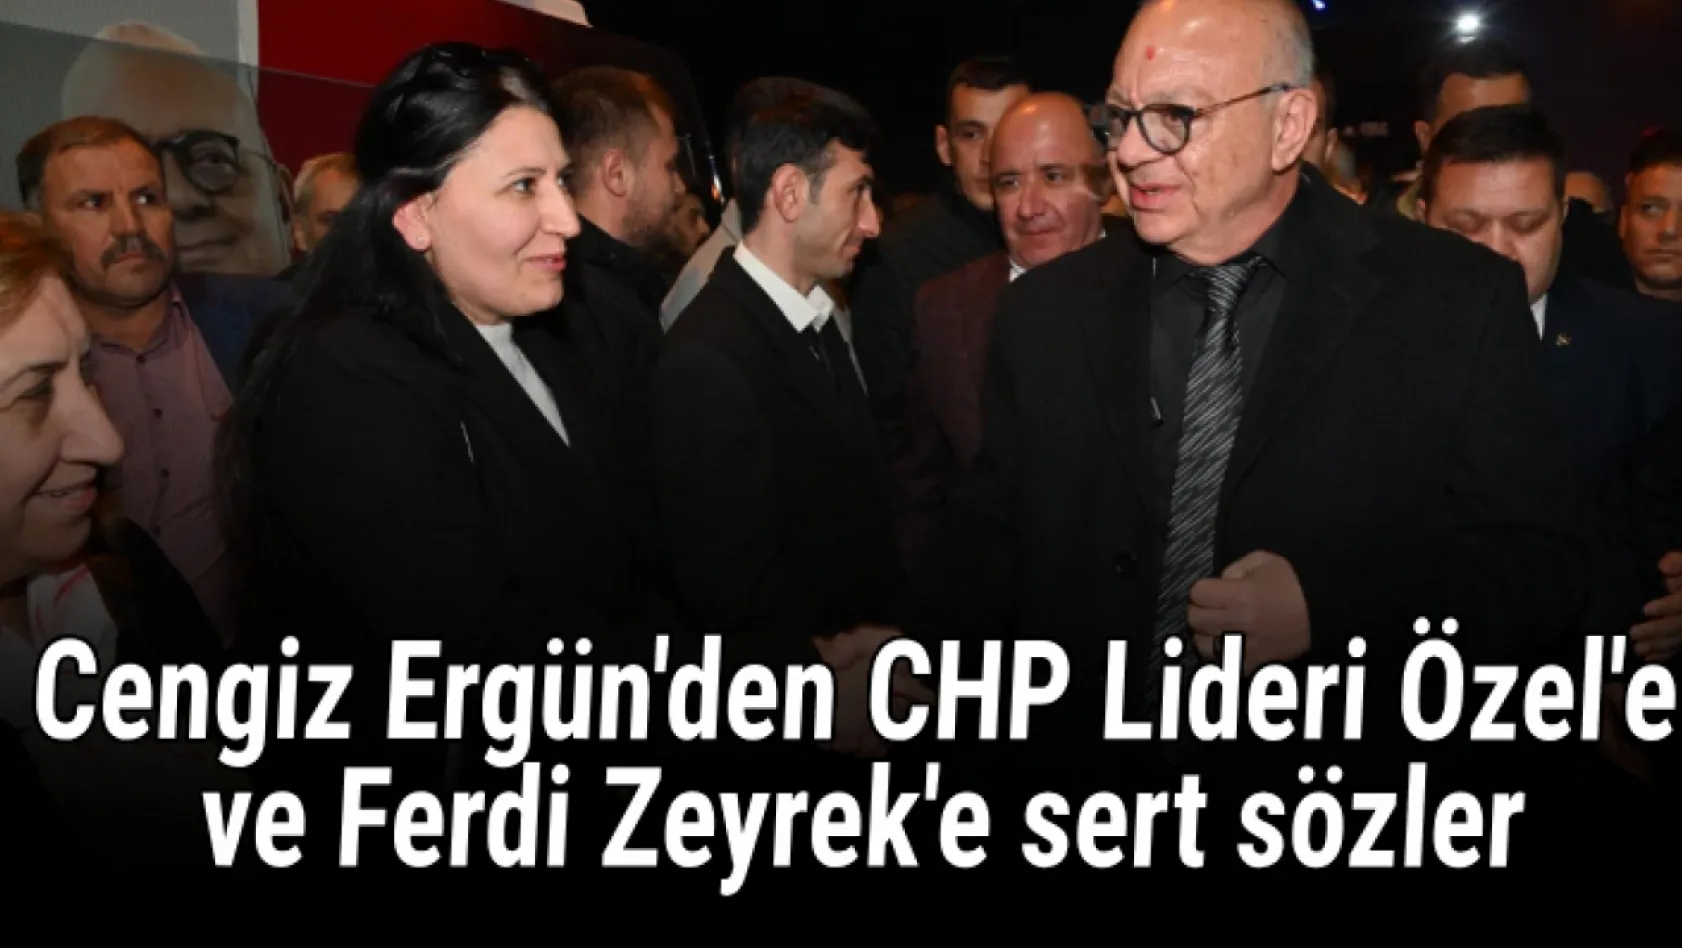 Cengiz Ergün'den CHP Lideri Özel'e ve Ferdi Zeyrek'e sert sözler